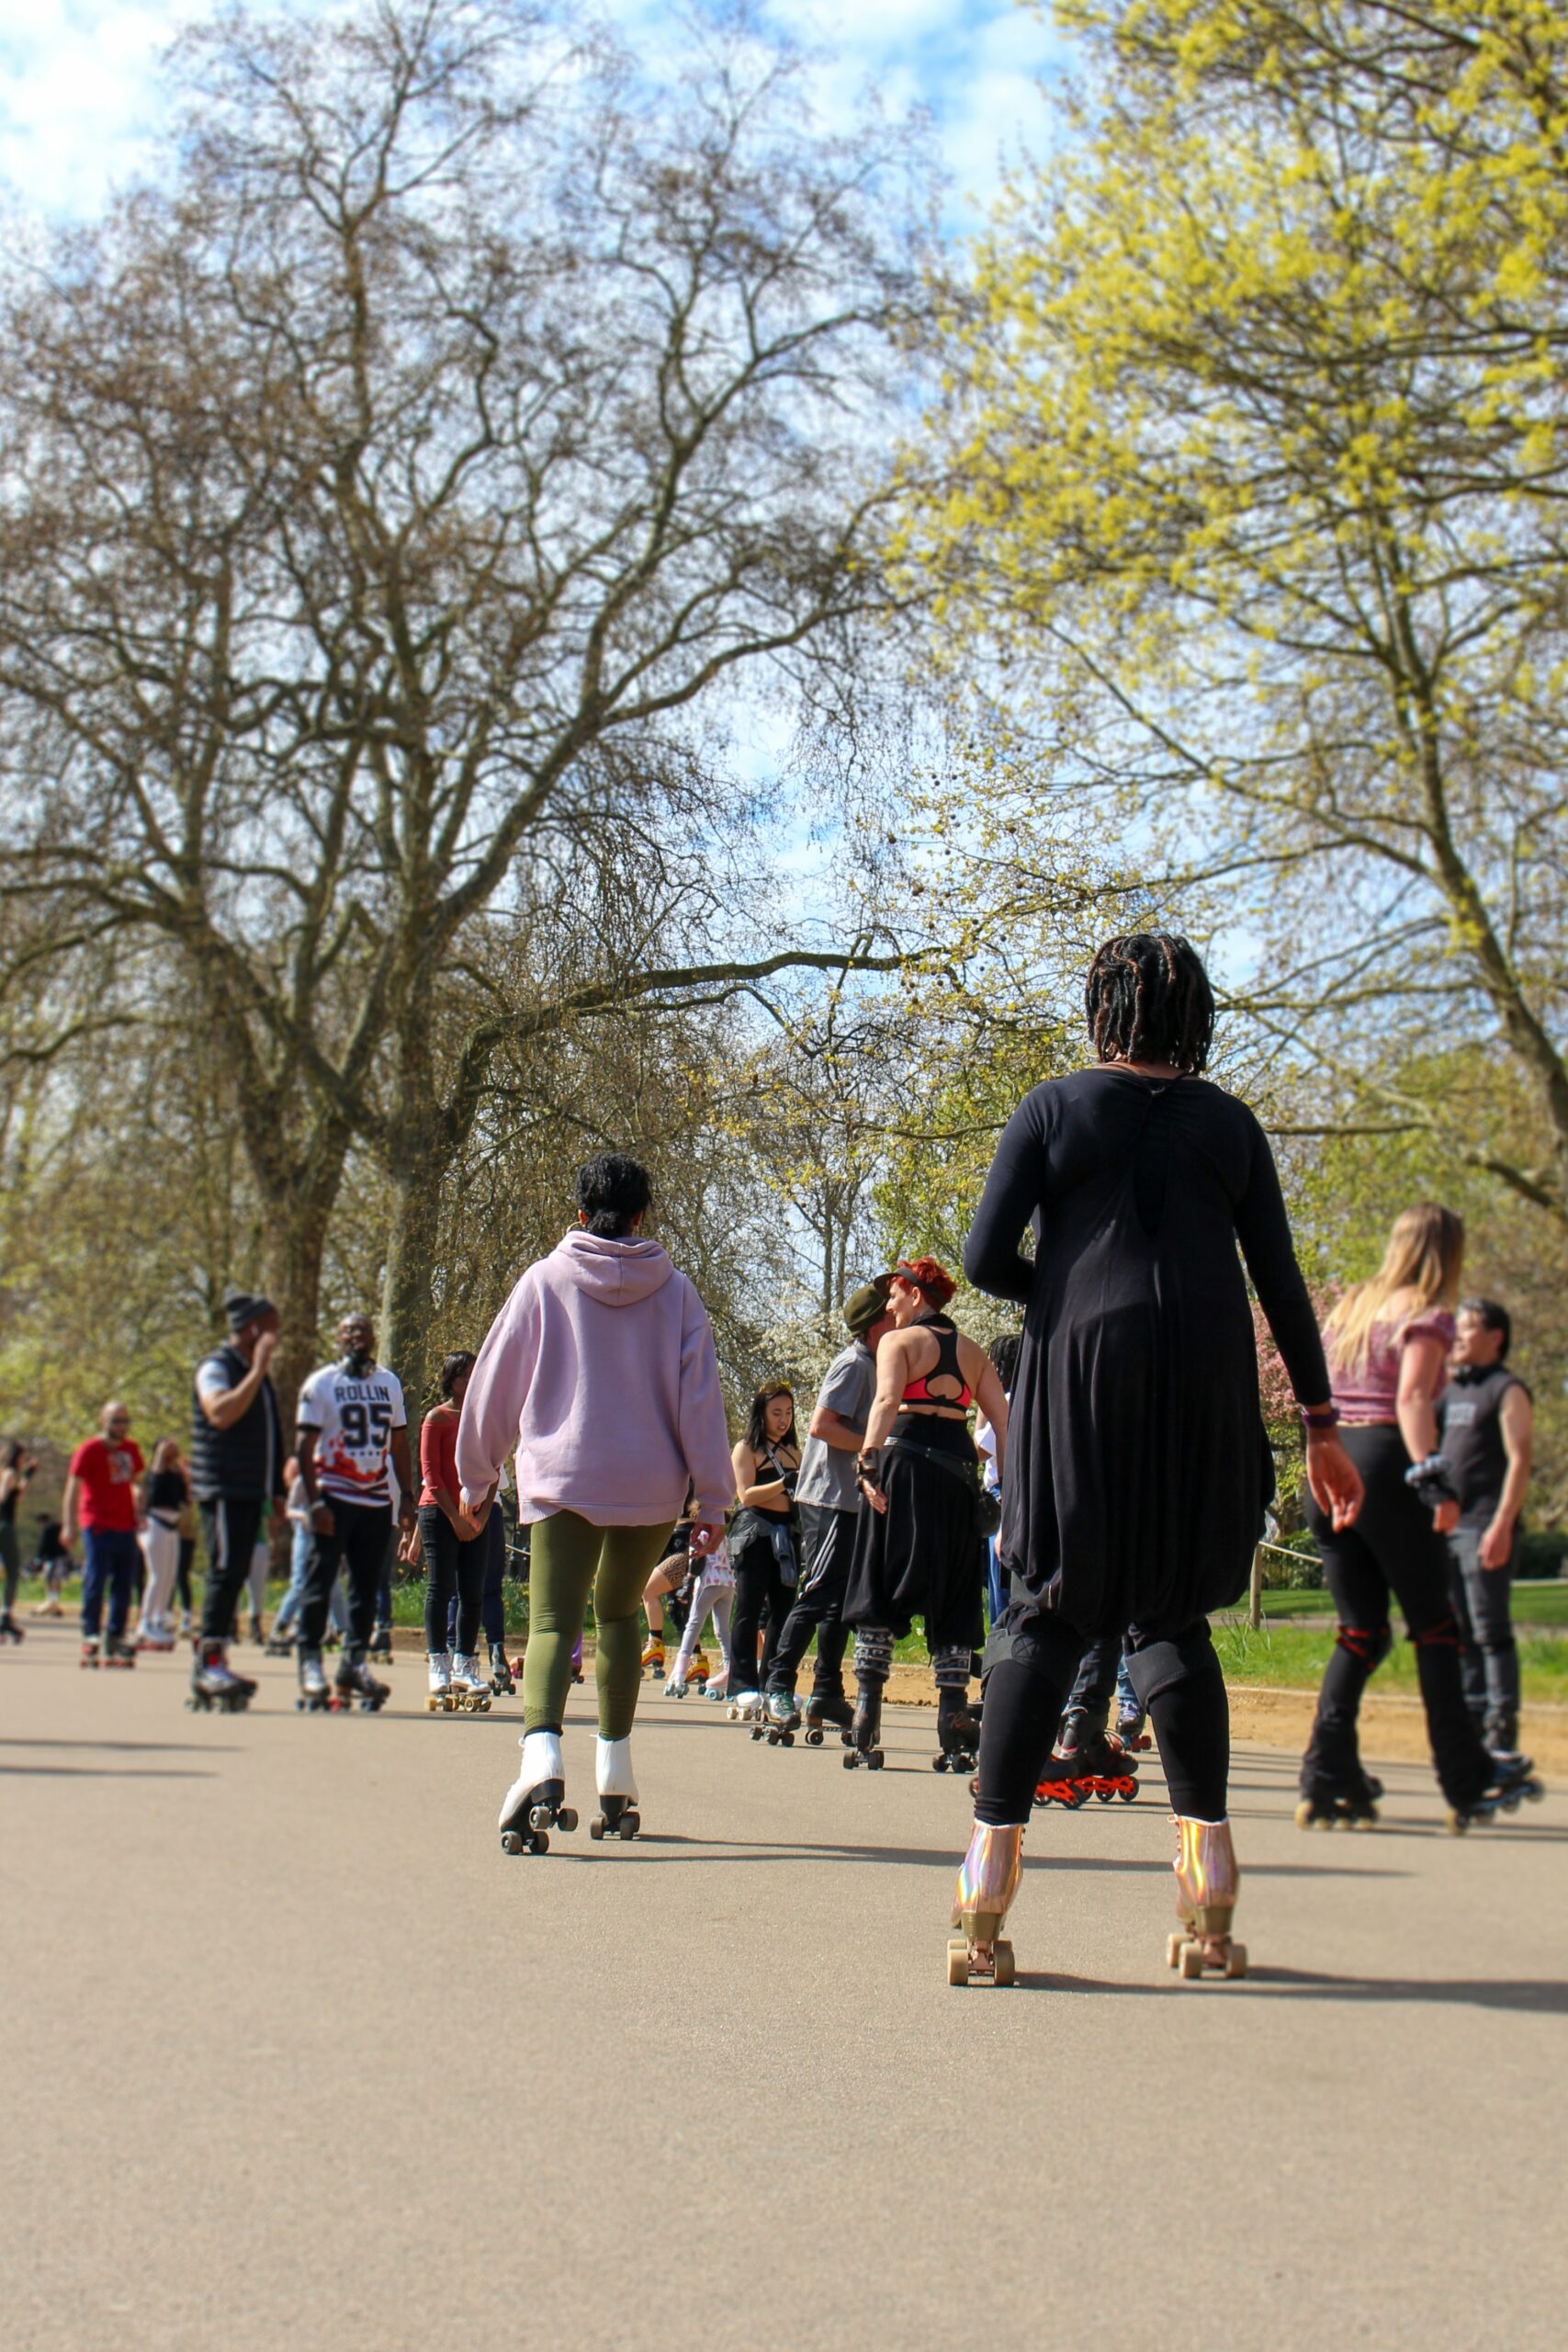 Ett tjugotal människor åker rullskridskor på asfalten i en park. I bakgrunden syns träd och gräs.